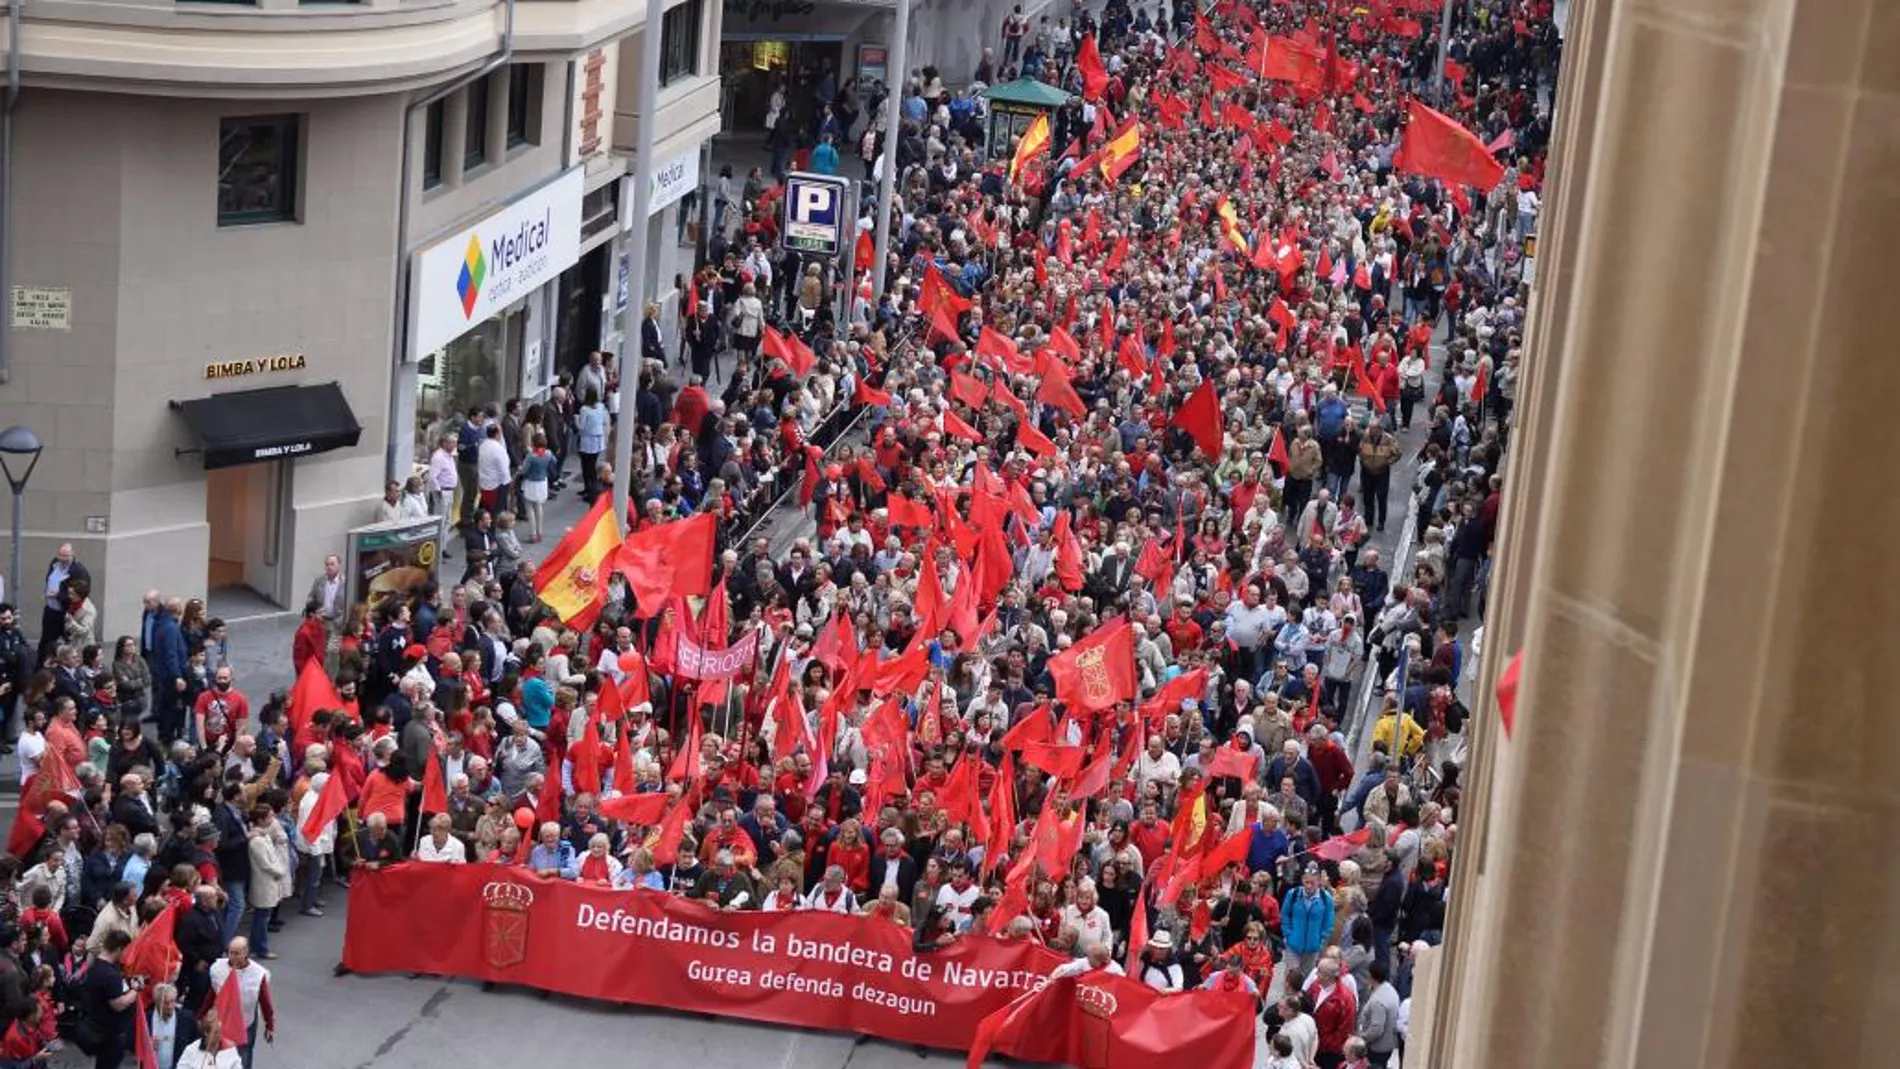 Manifestación en Pamplona en defensa de la bandera navarra